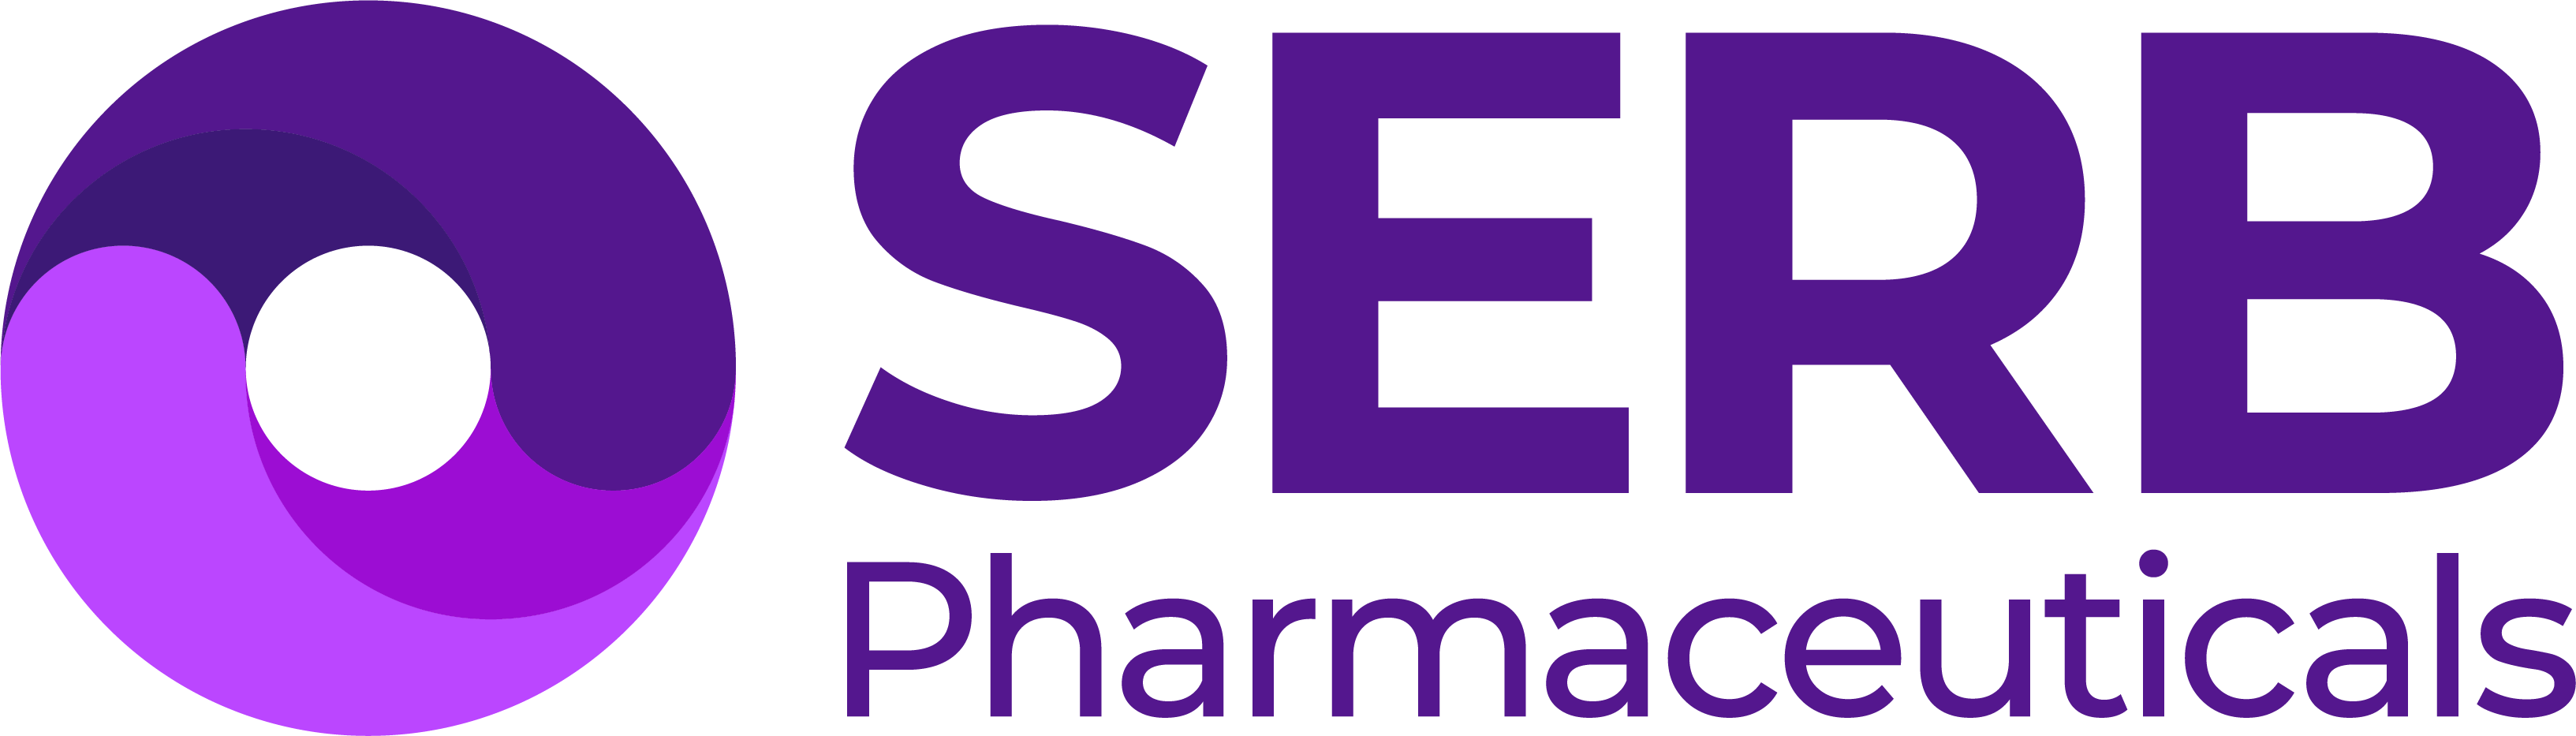 pharmaceuticals logo